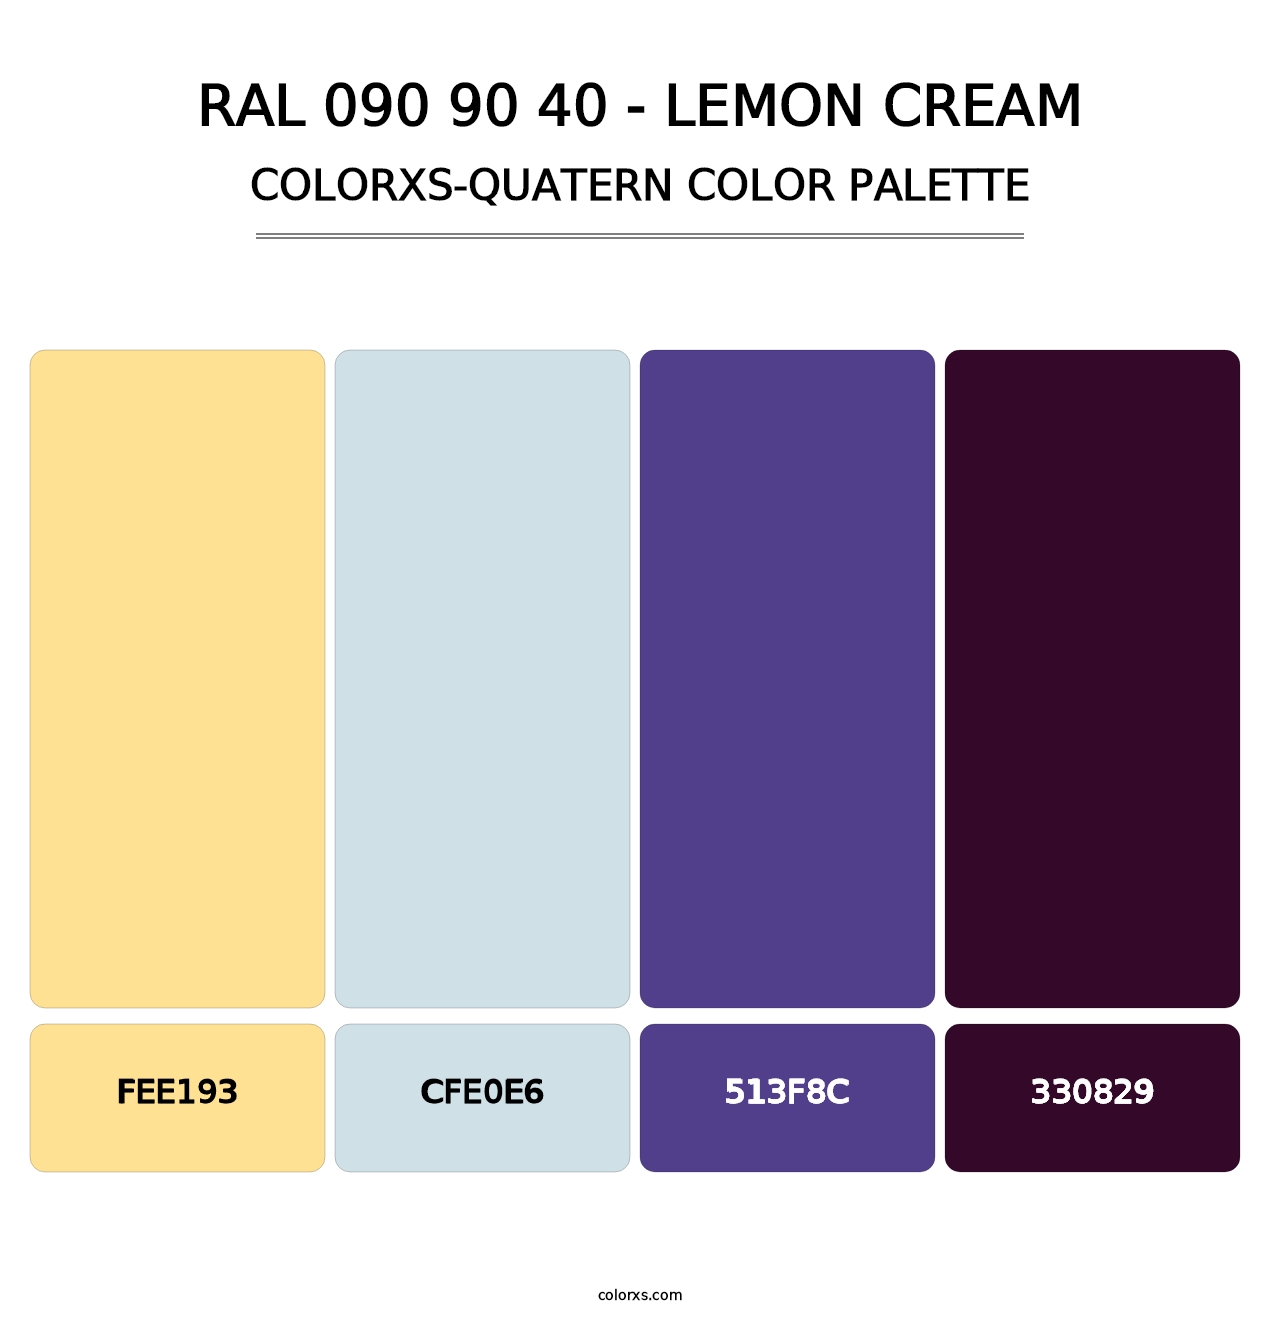 RAL 090 90 40 - Lemon Cream - Colorxs Quatern Palette